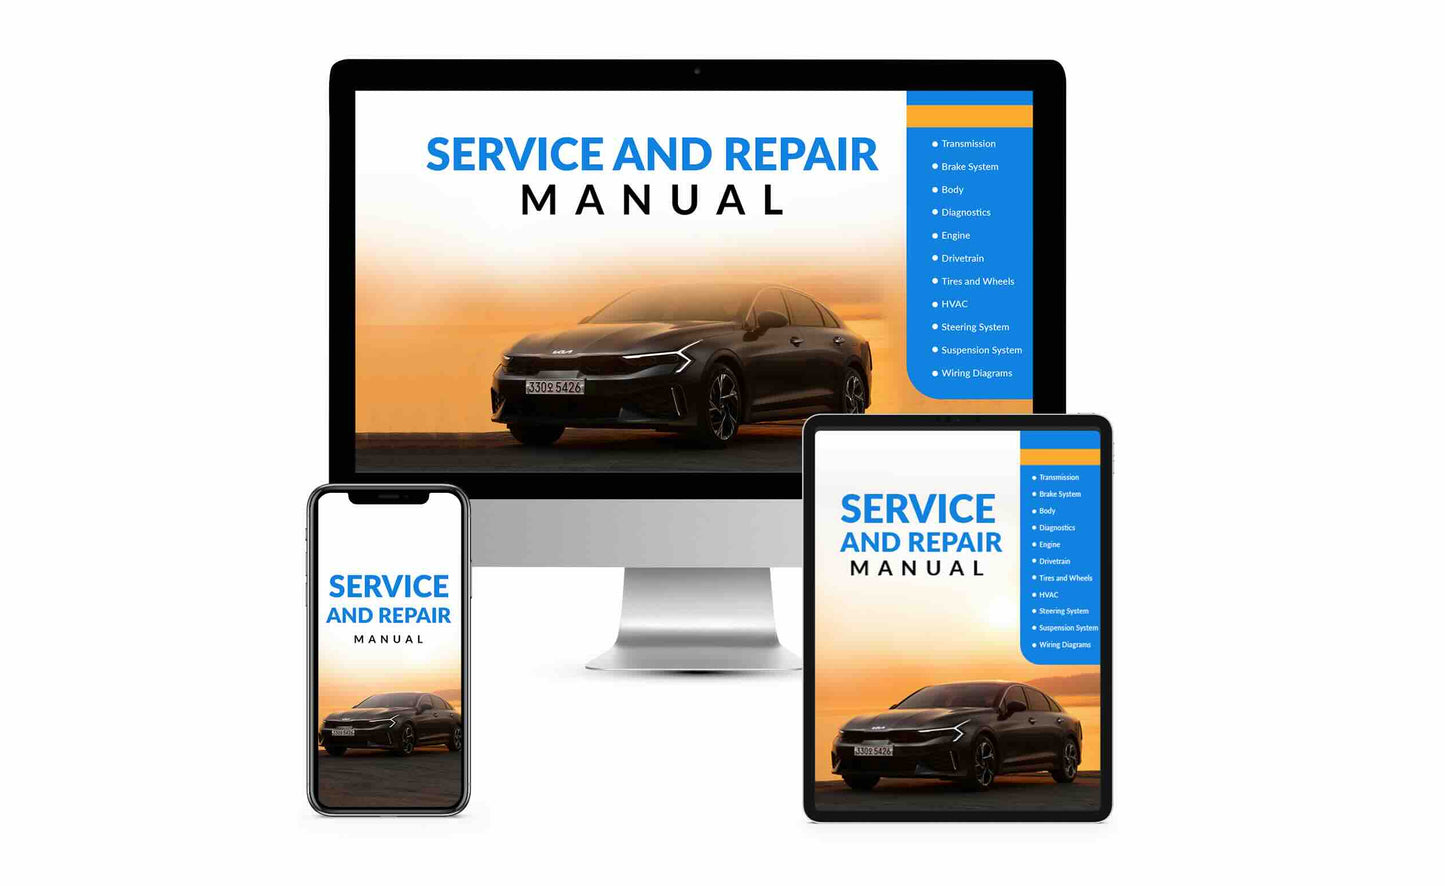 2011 TOYOTA Corolla OEM Service and Repair Workshop Manual